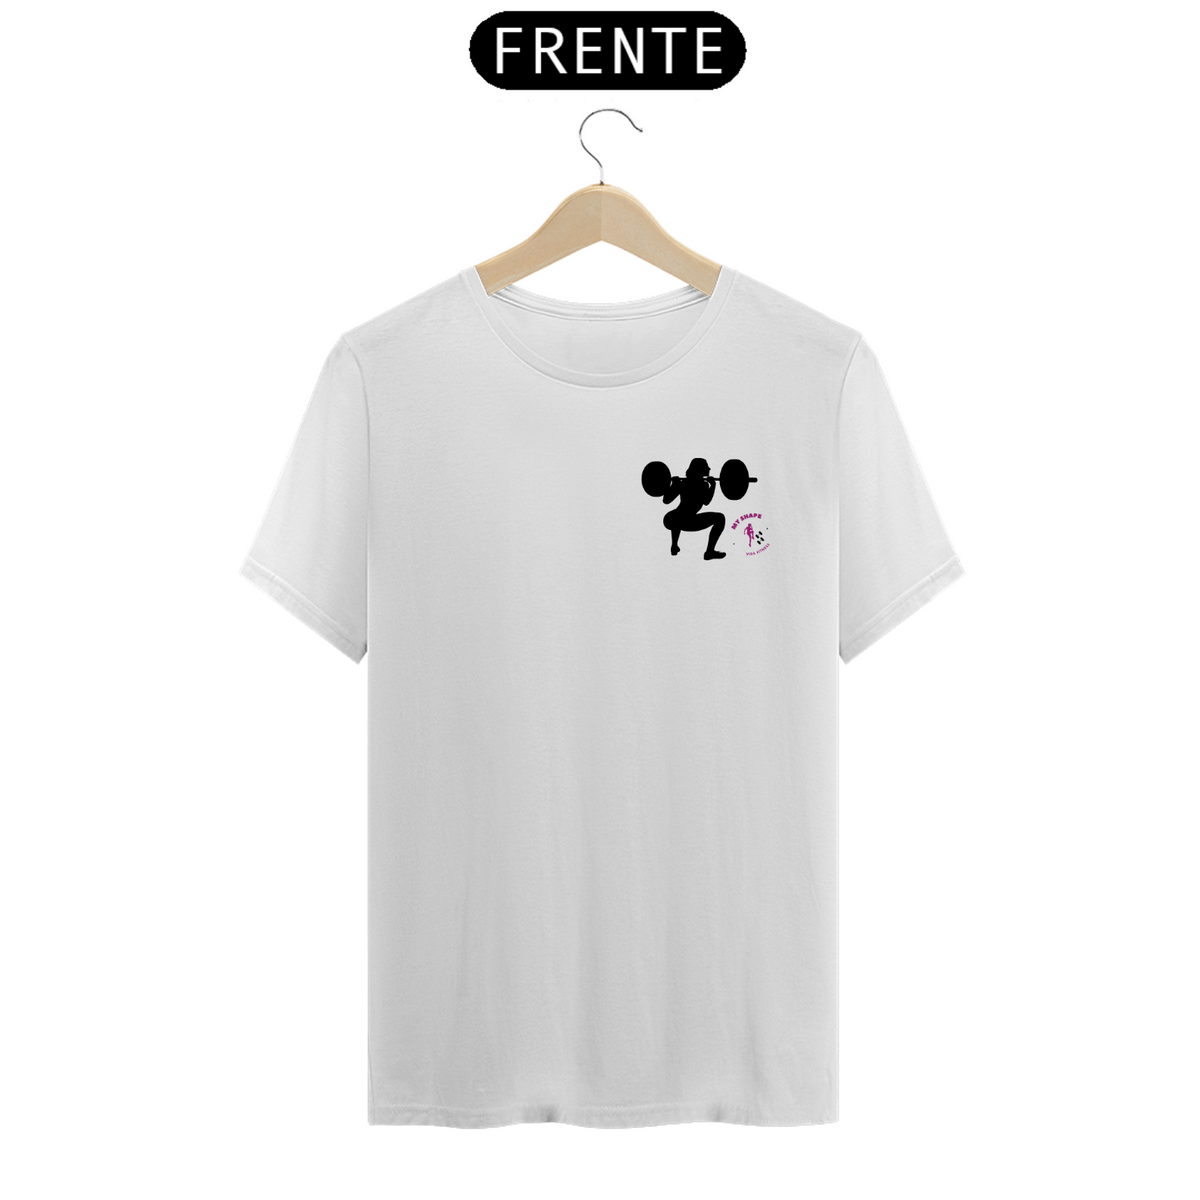 Nome do produto: T-shirt Algodão feminina Garota Agachando branca, rosa e cinza